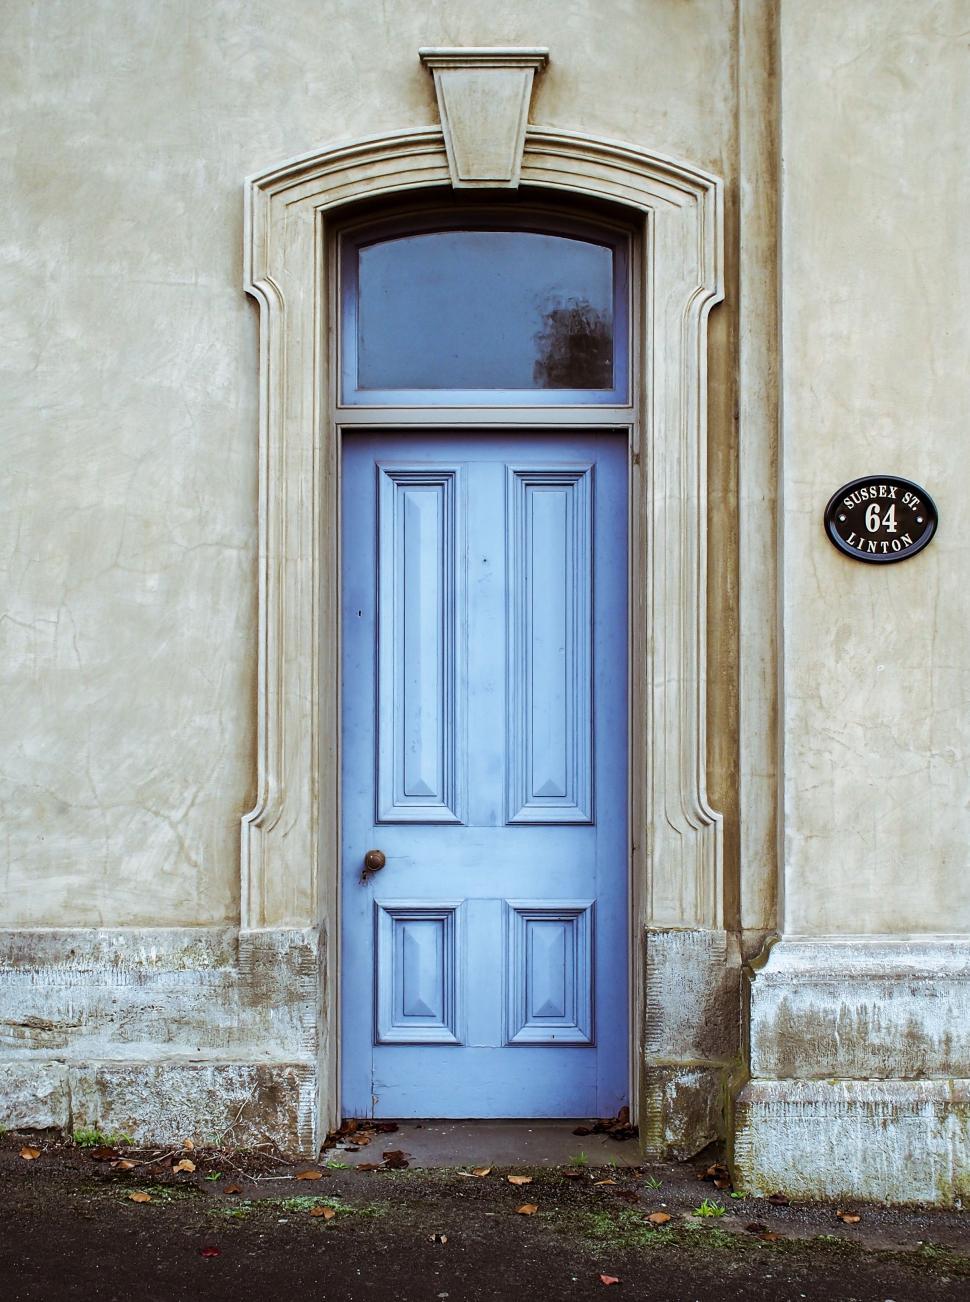 Free Image of Blue Door in Front of Tan Building 